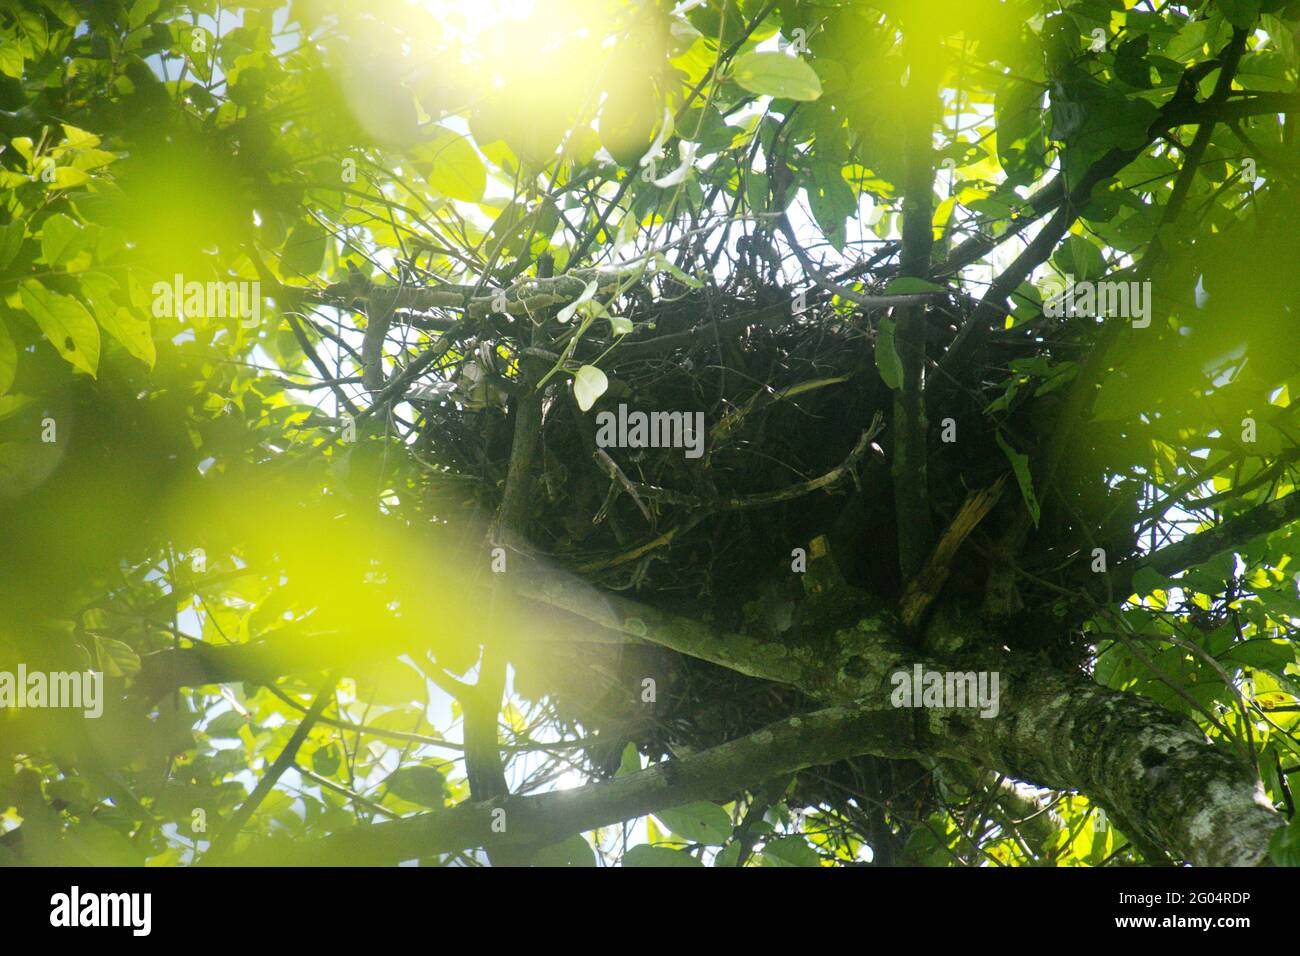 Ein Nest gehört zu wildem Orang-Utan im Kutai-Nationalpark, Rast Kalimantan, Indonesien. Der Kutai-Nationalpark gilt als einer der letzten natürlichen Lebensräume, in denen wildes Orang-Utan beobachtet werden kann. Stockfoto